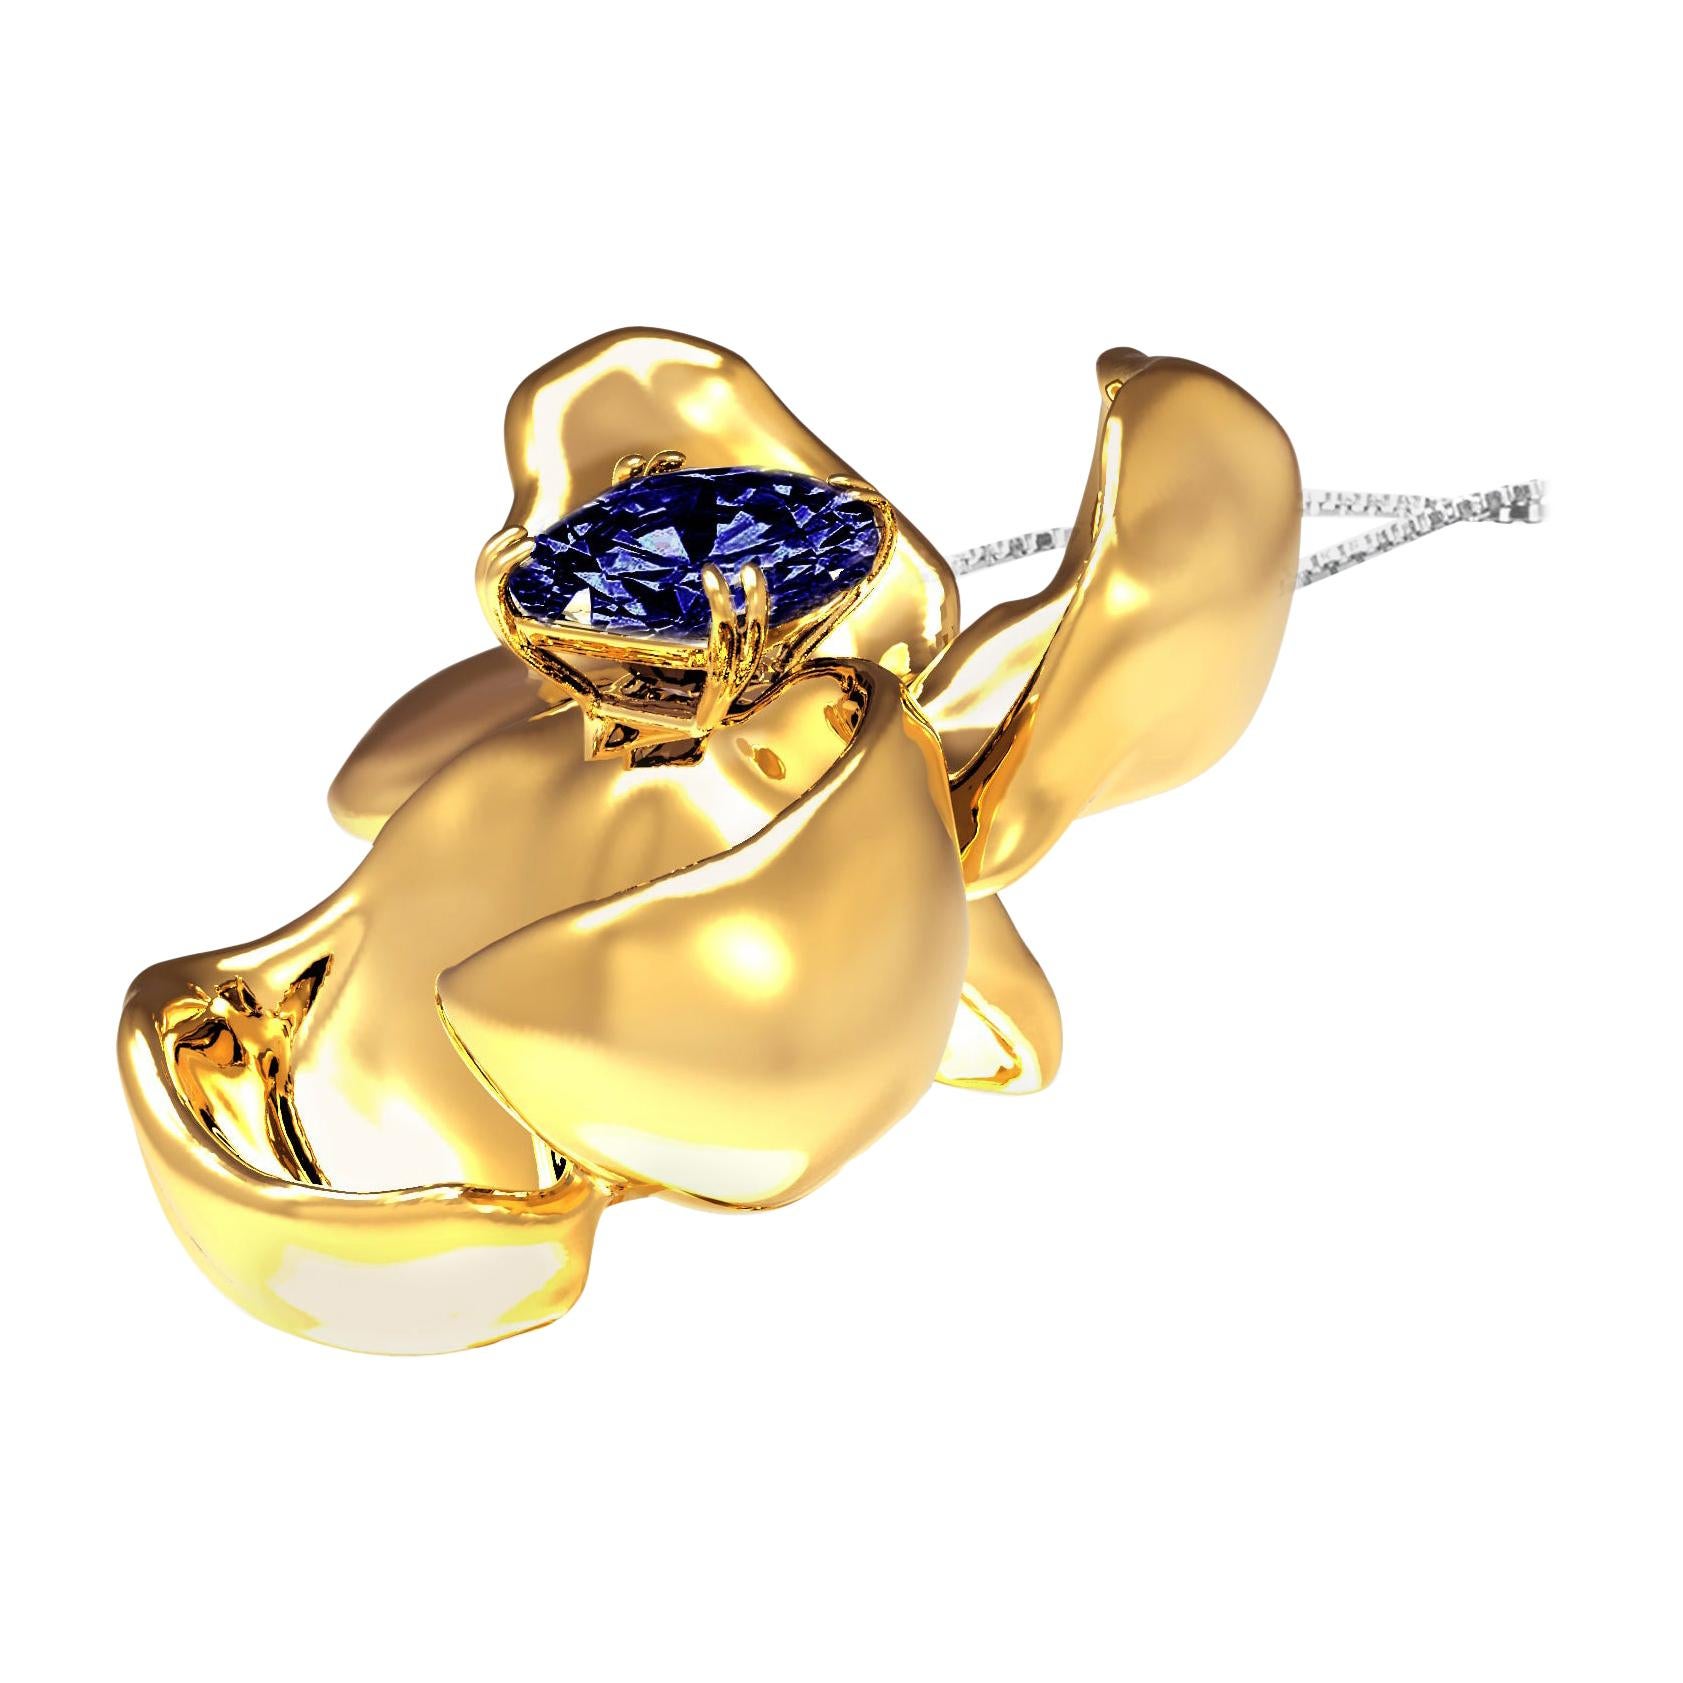 Collier pendentif en or 18 carats avec saphir bleu royal de 1 carat, sans chaleur